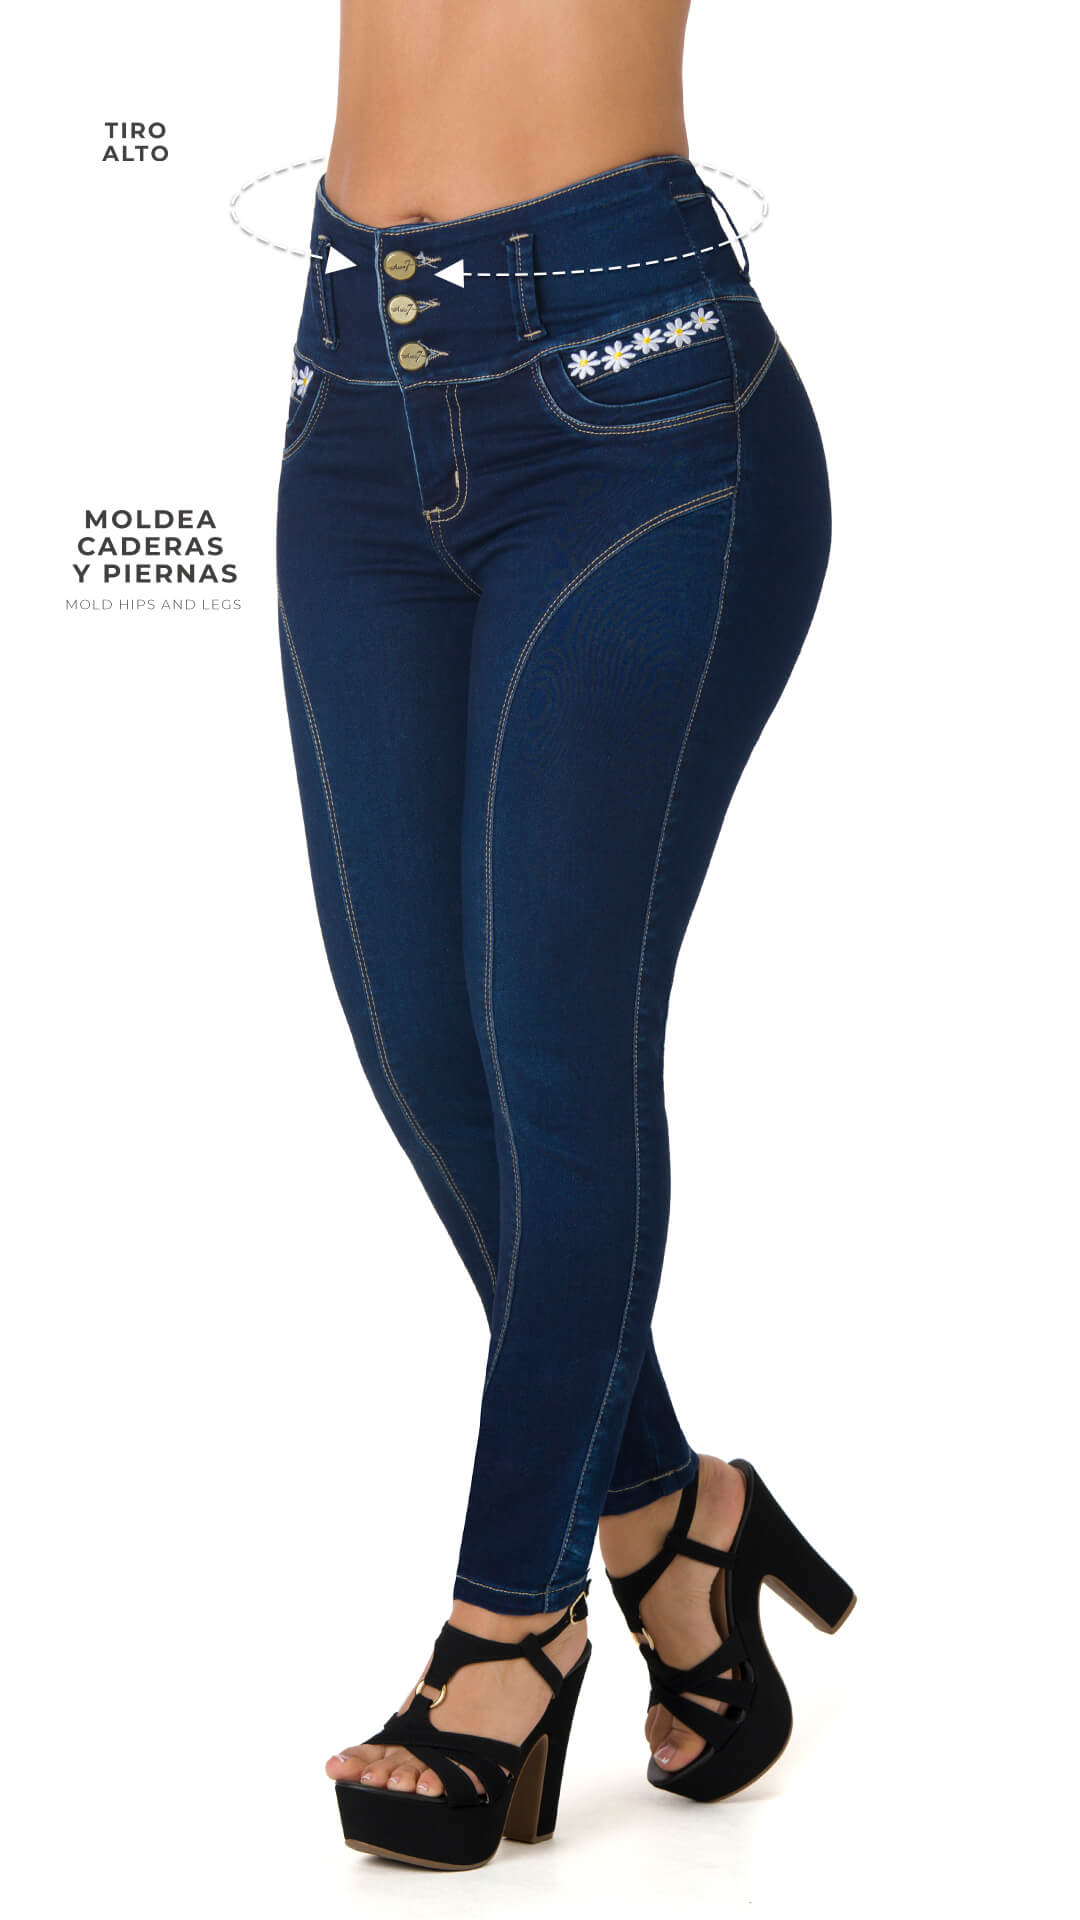 Juanita butt lifting skinny jeans 40572PAP-N – Ska Studio Usa